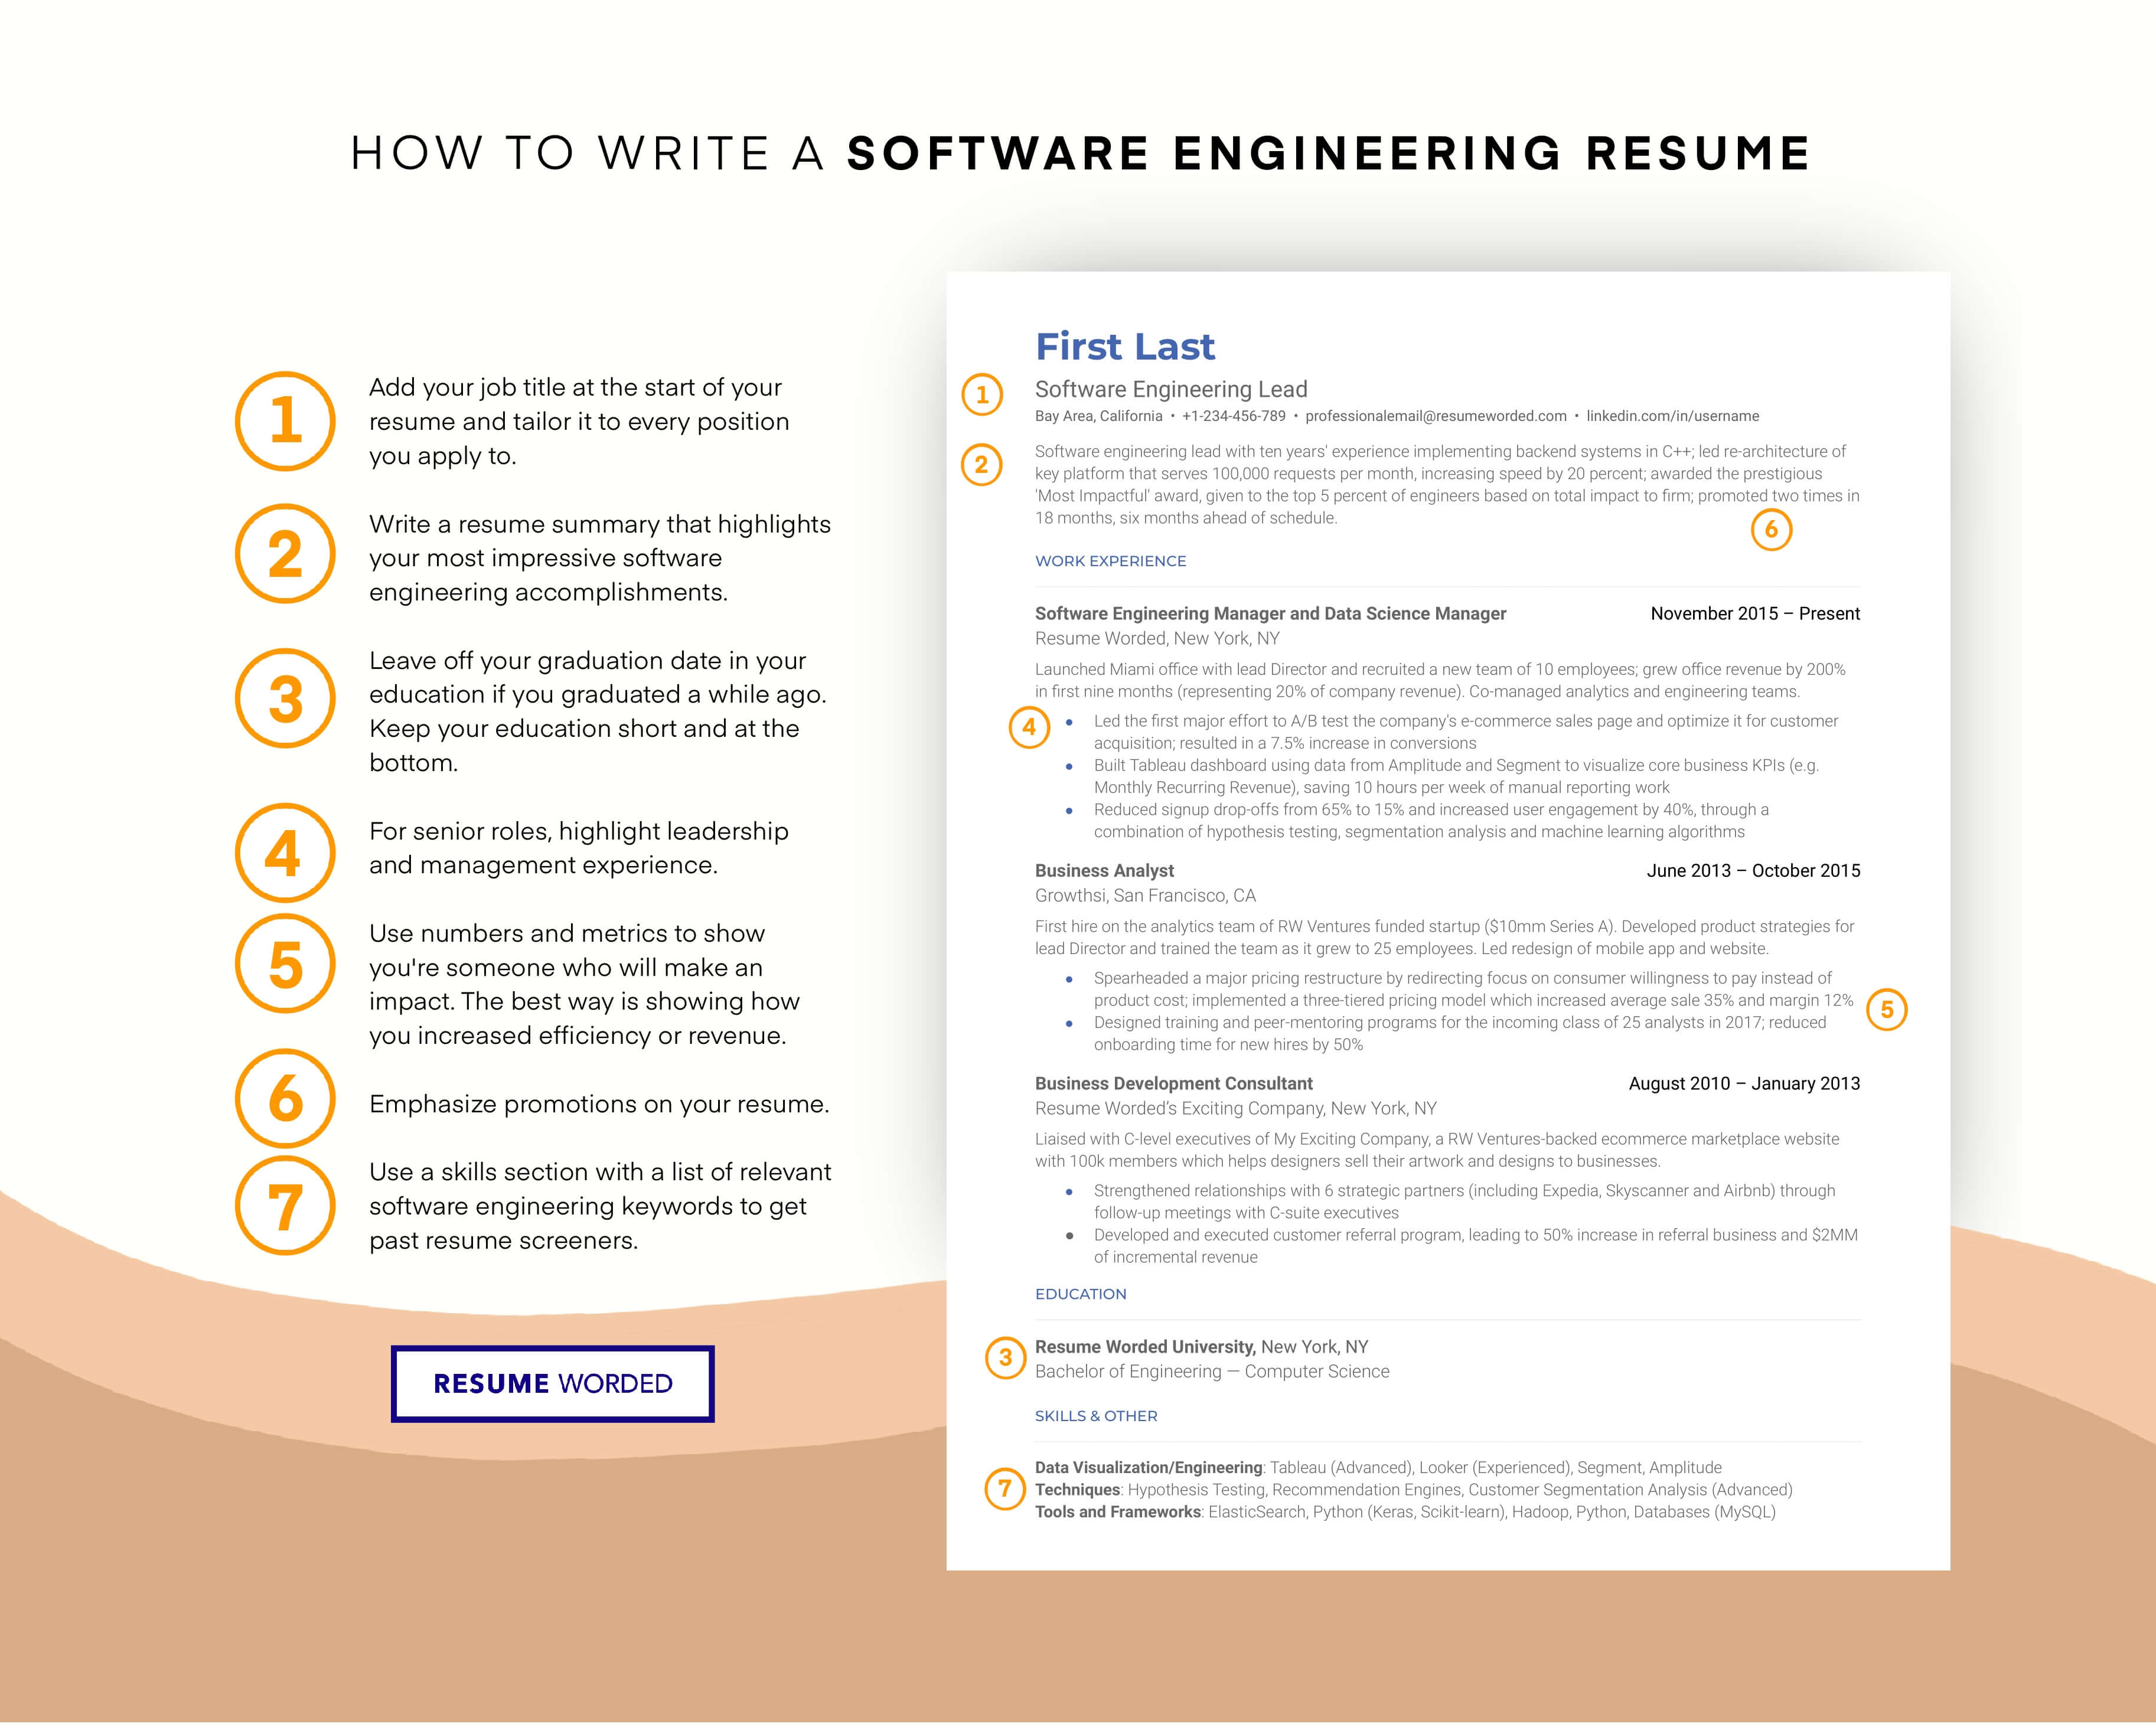 Use software engineering keywords. - Lead Software Engineer Resume